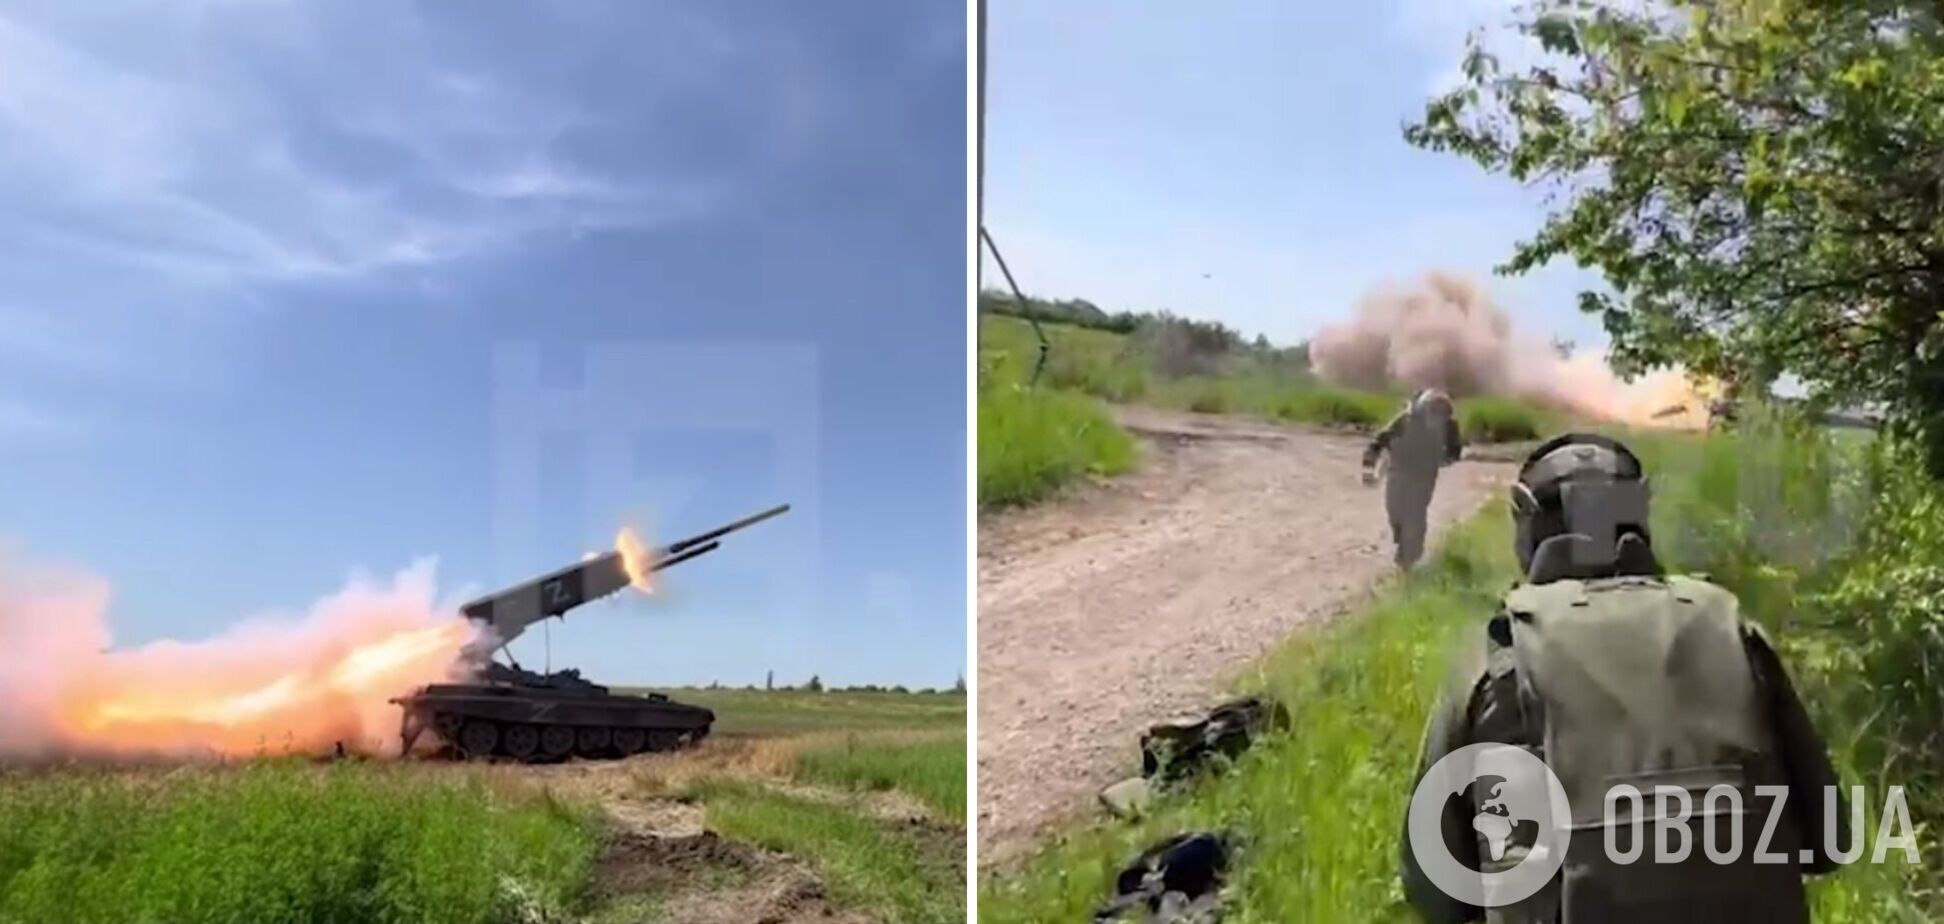 'Ответ' прилетел через минуту: российские пропагандисты сняли удар ВСУ по вражеской технике, показывая обстрел Украины. Видео